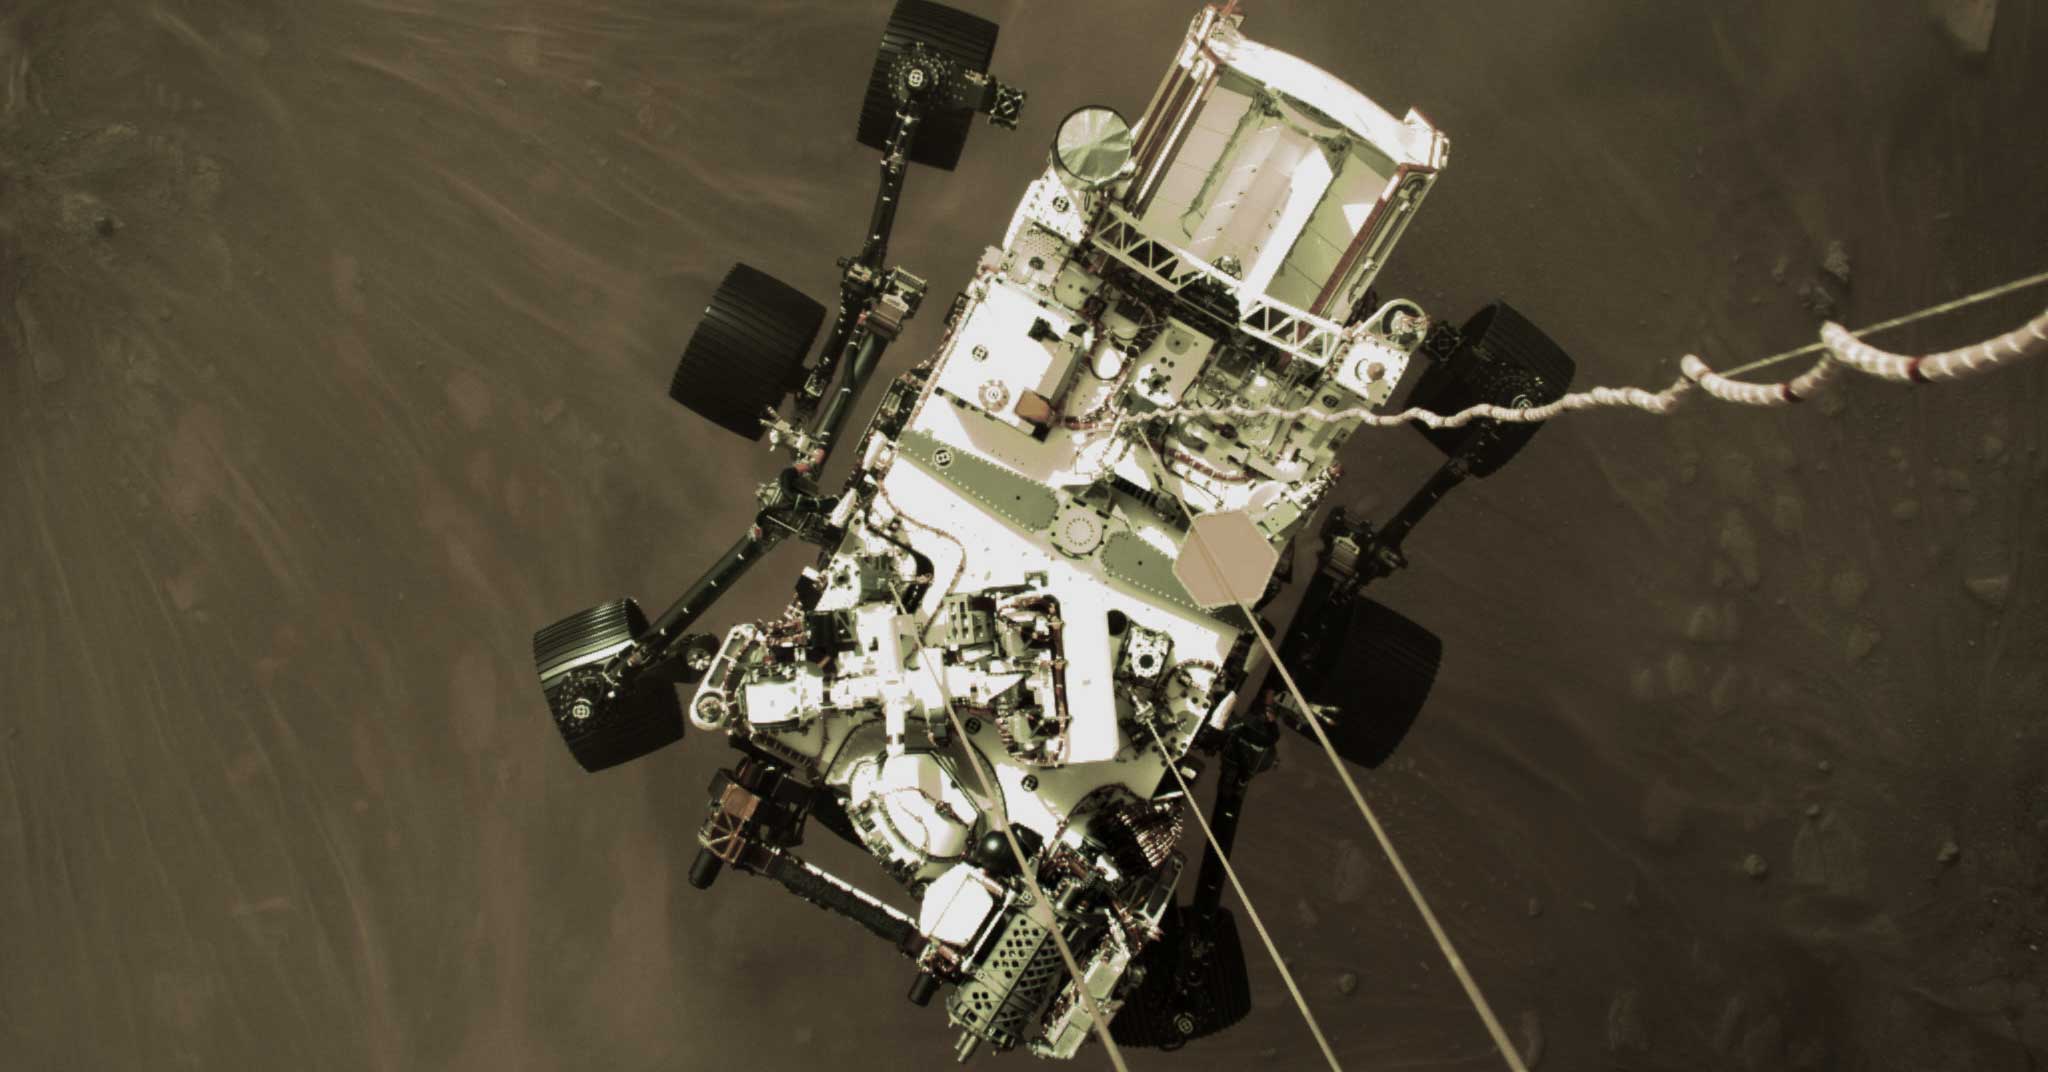 Las cámaras de visión artificial FLIR registran imágenes de alta definición del aterrizaje del rover Perseverance en Marte | Teledyne FLIR